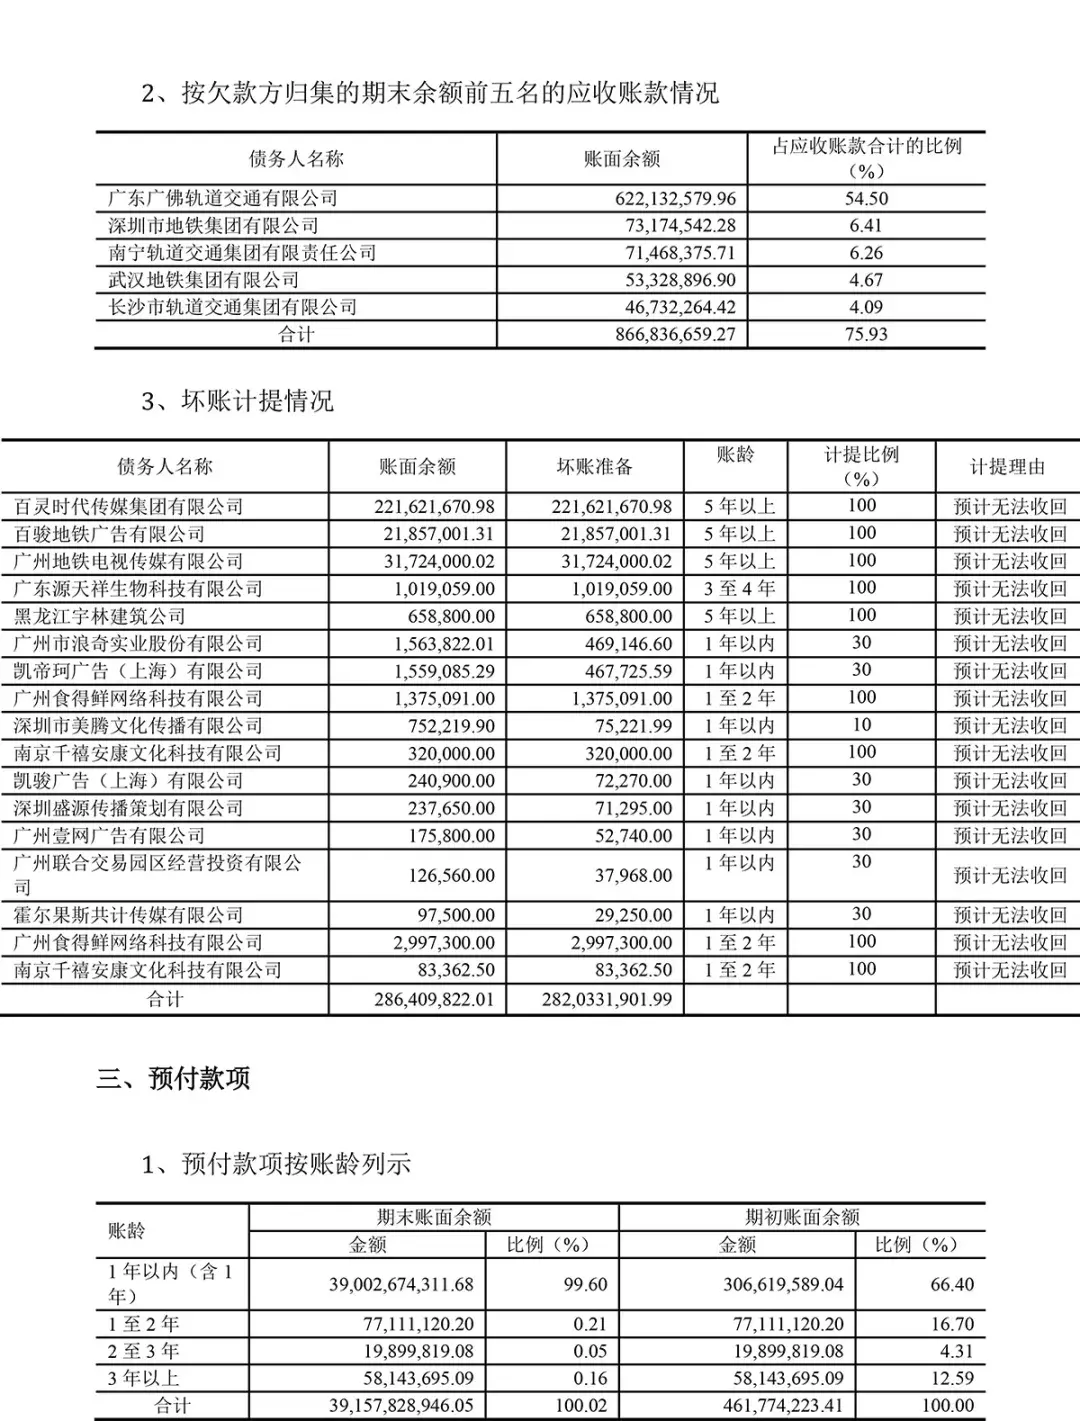 (广州地铁集团有限公司)广州地铁集团有限公司2020年半年度财务报表  第10张